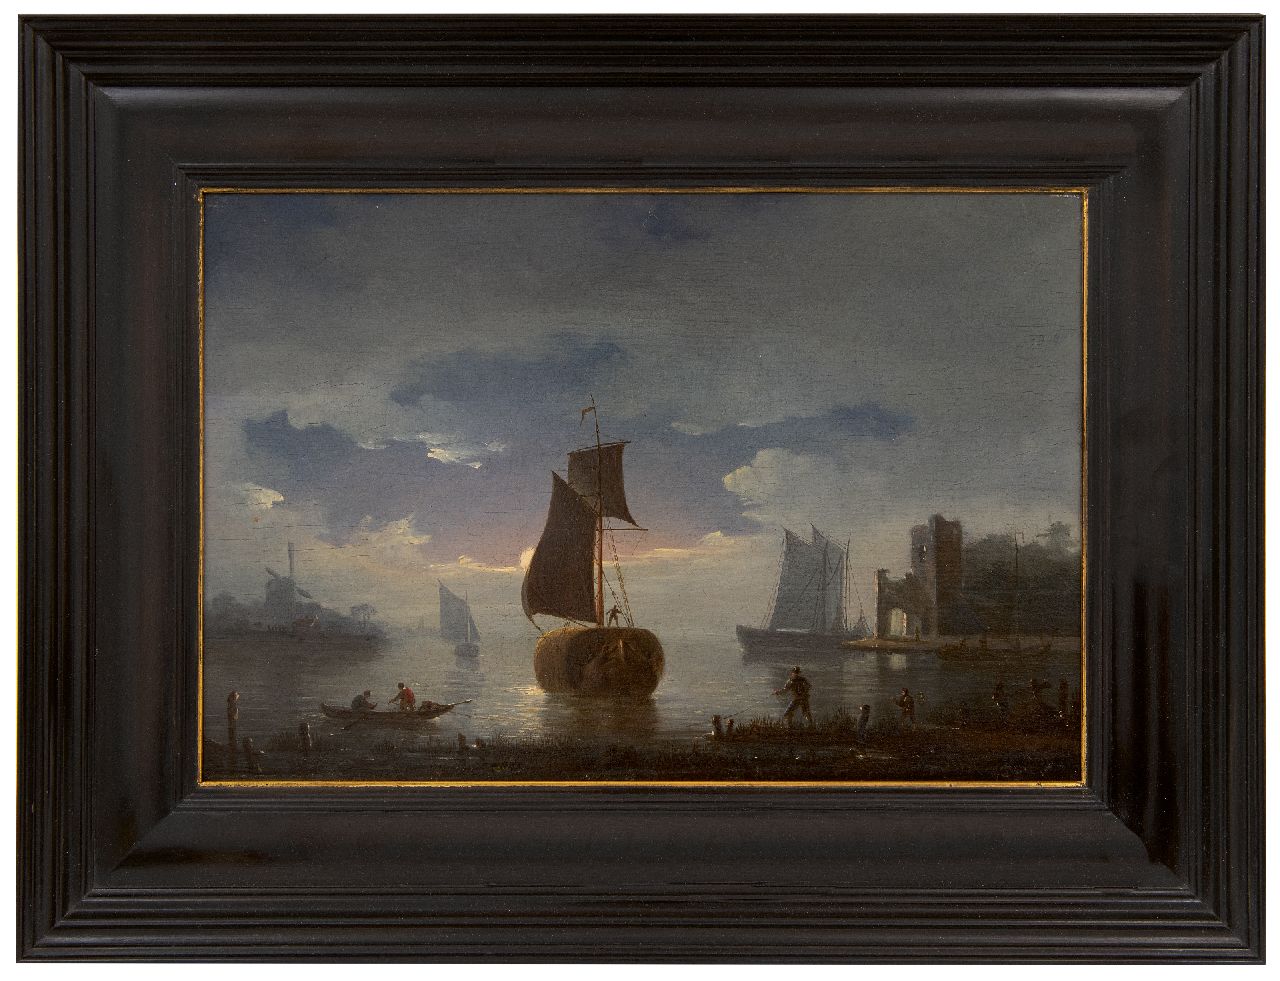 Gruijter G.  | Gerrit Gruijter | Schilderijen te koop aangeboden | Afmerend hooischip bij maanlicht, olieverf op paneel 22,4 x 33,0 cm